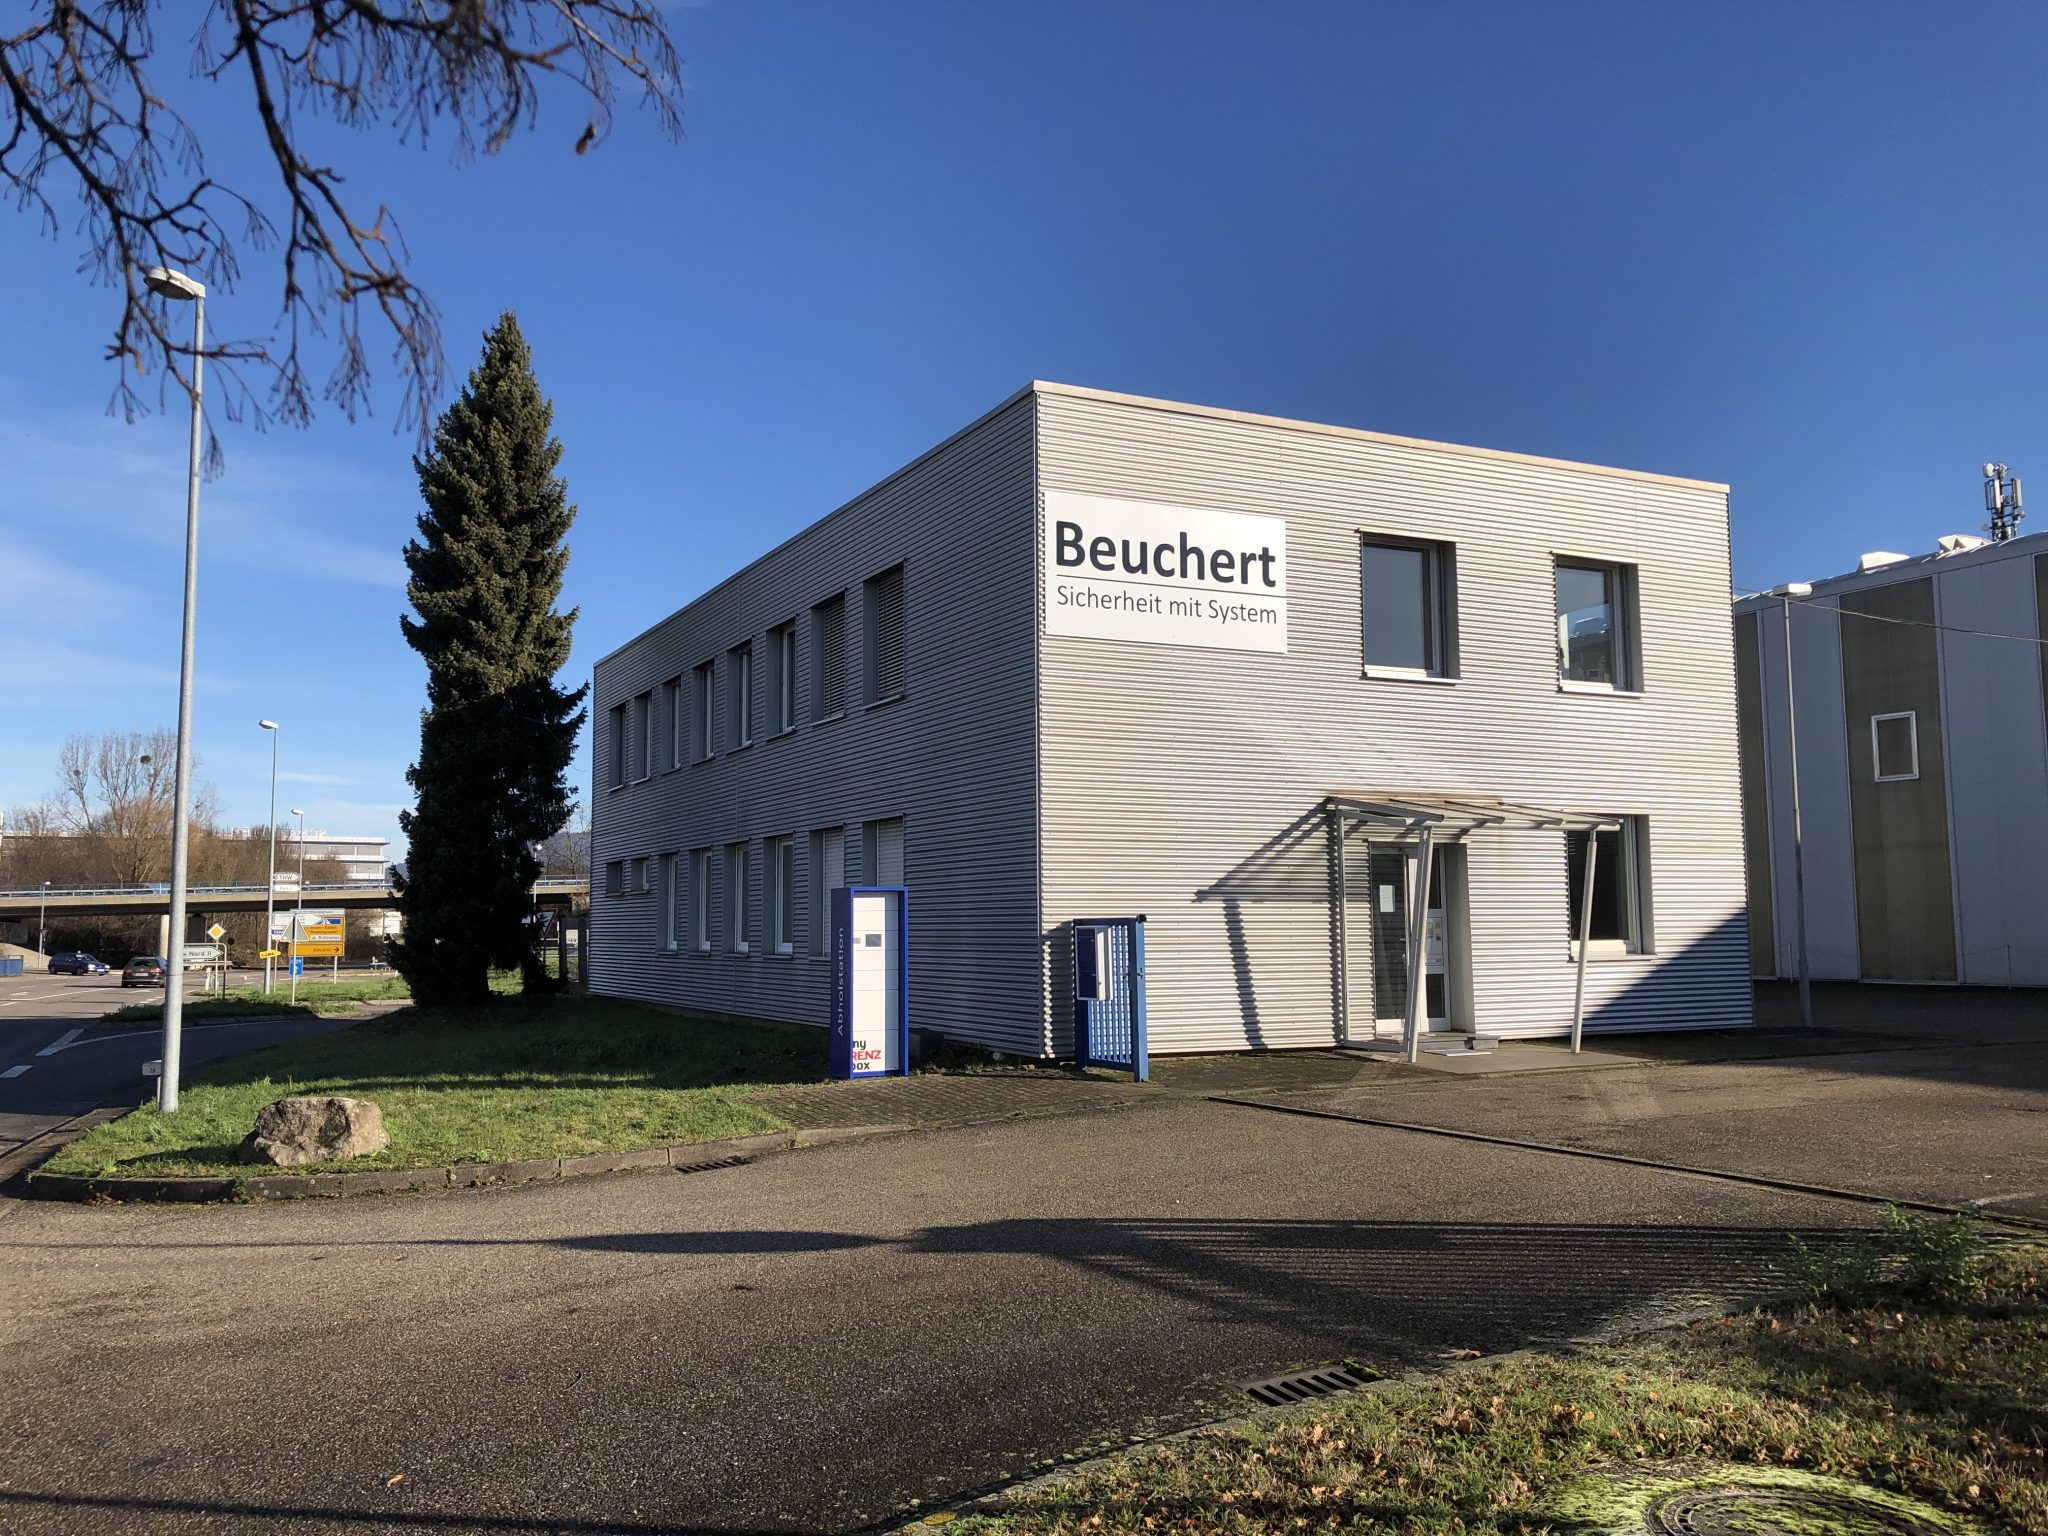 Beuchert GmbH